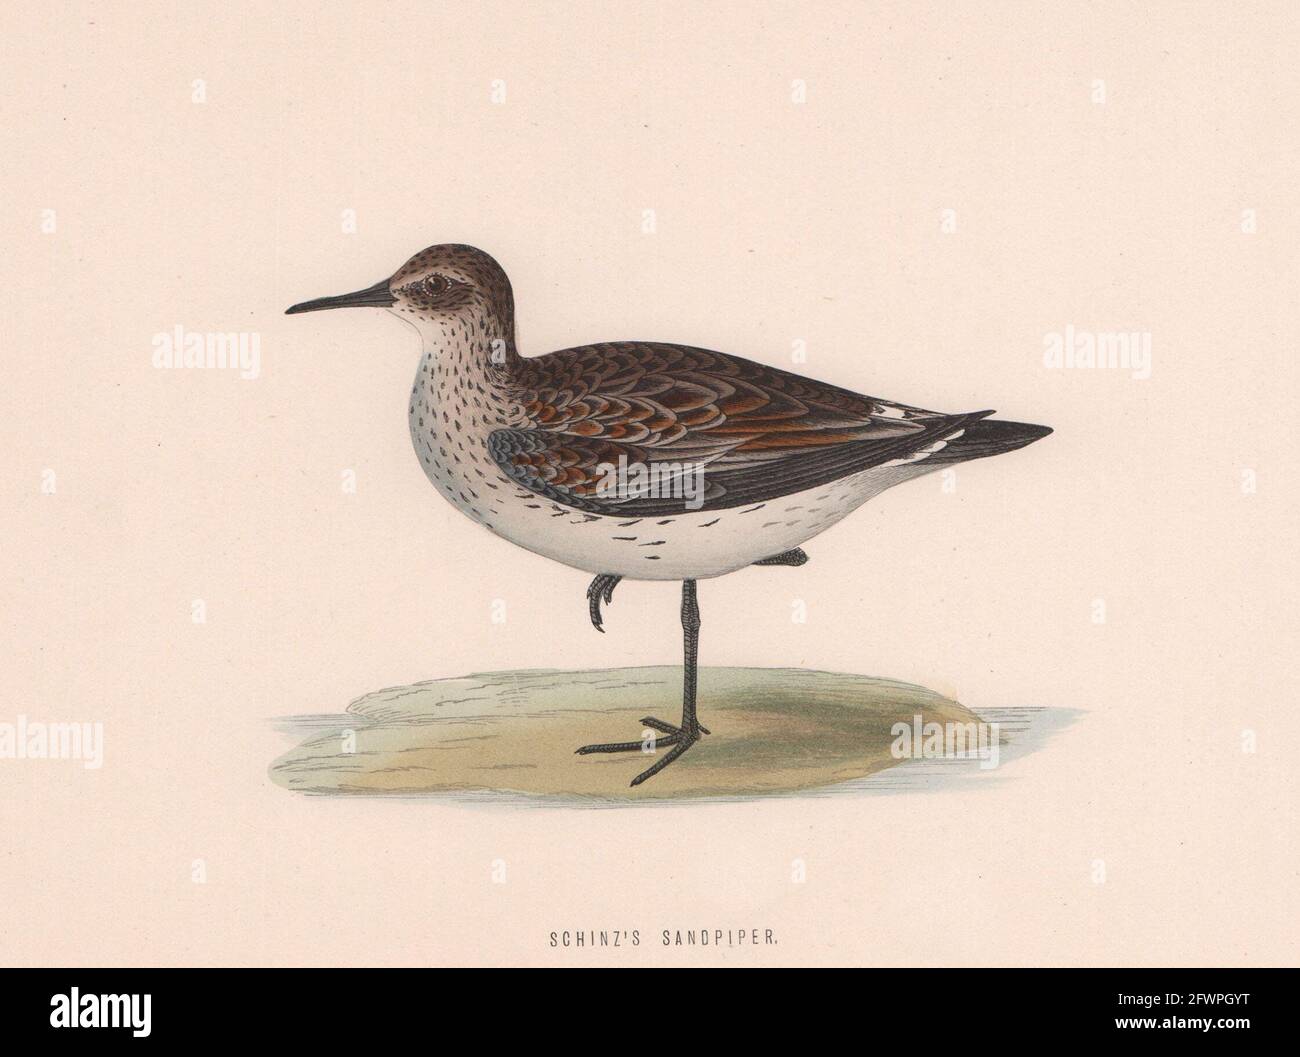 Sandpiper de Schinz. Morris's British Birds. Impression couleur antique 1870 Banque D'Images